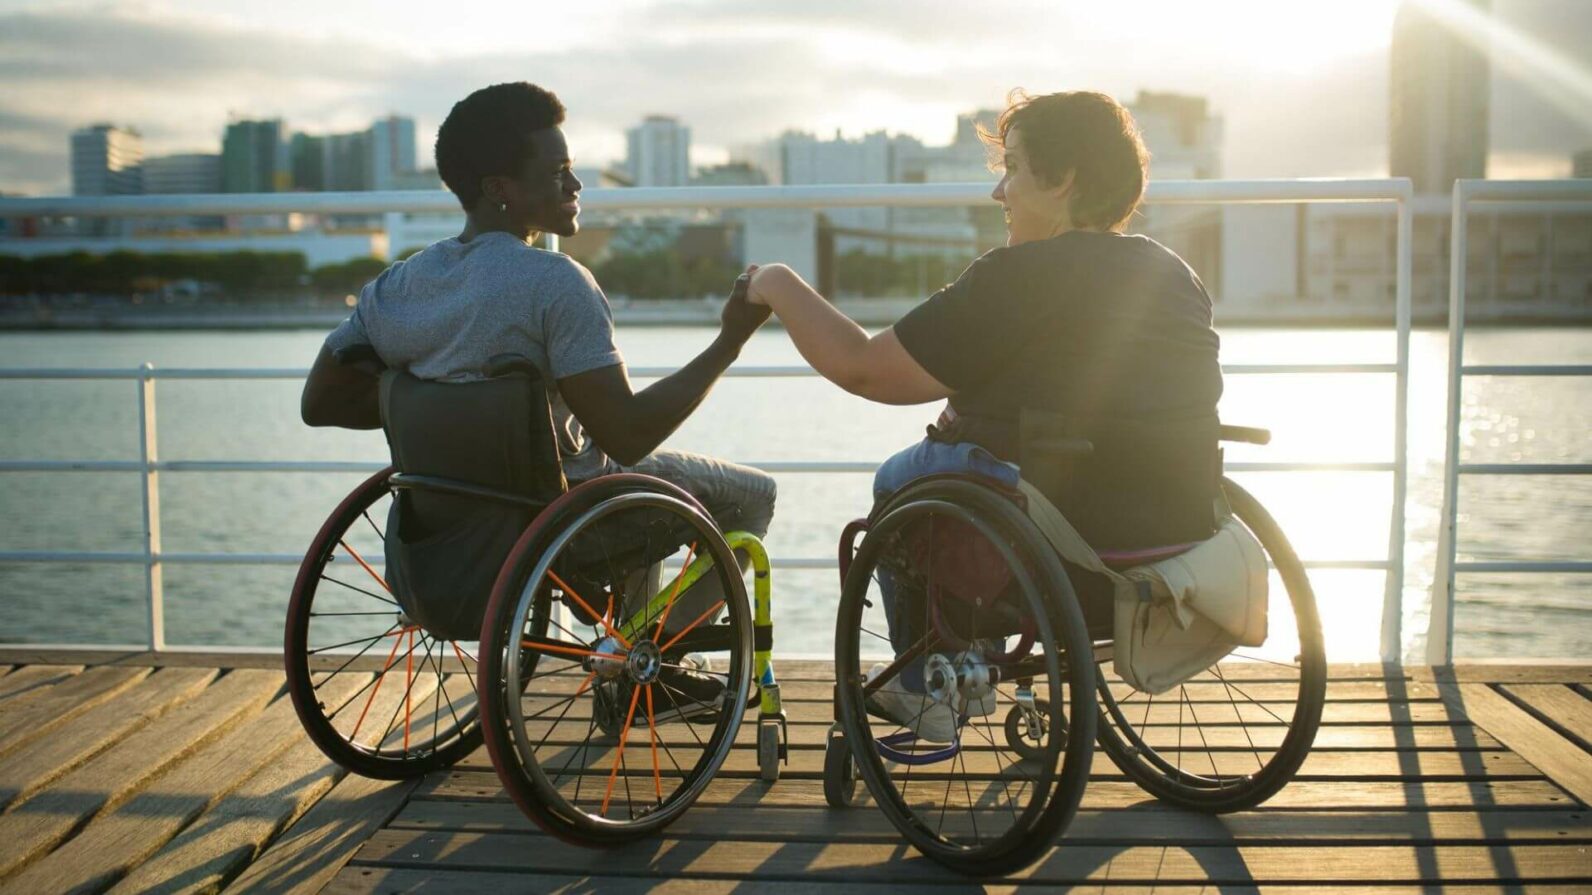 Contribuindo para a inclusão social de pessoas com deficiência